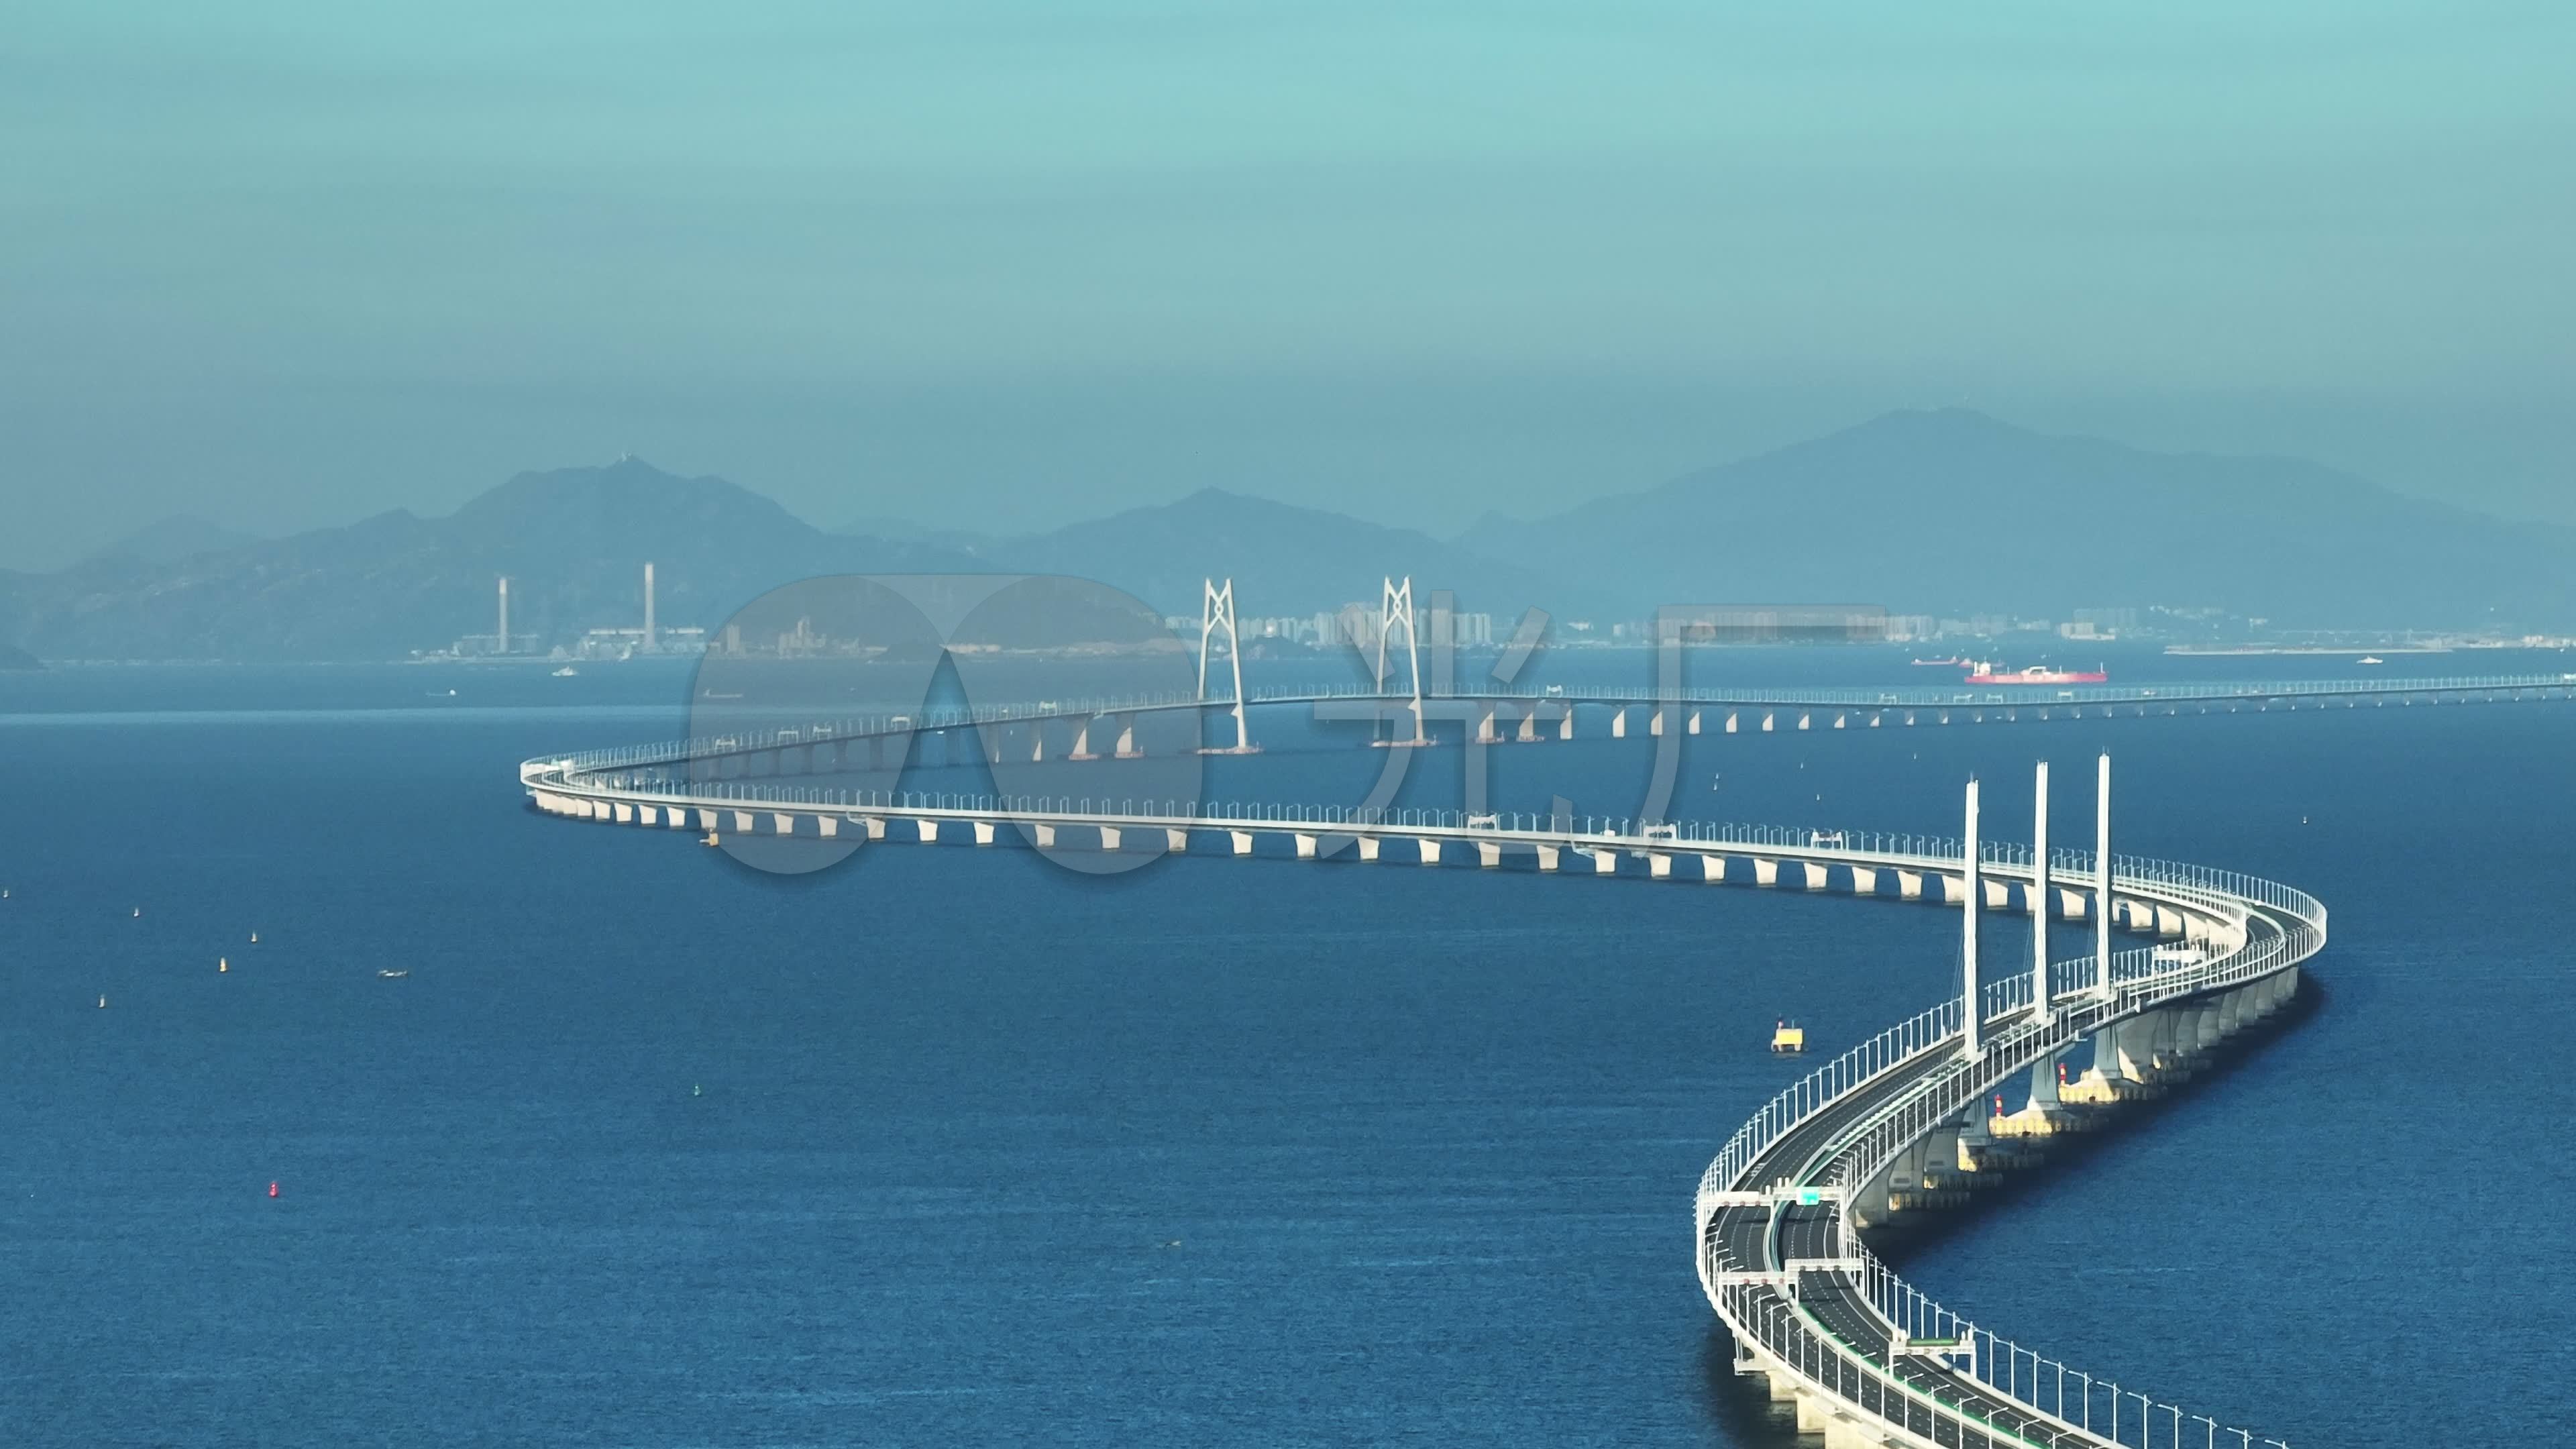 Hong Kong-Zhuhai-Macau Bridge: Longest sea bridge opens